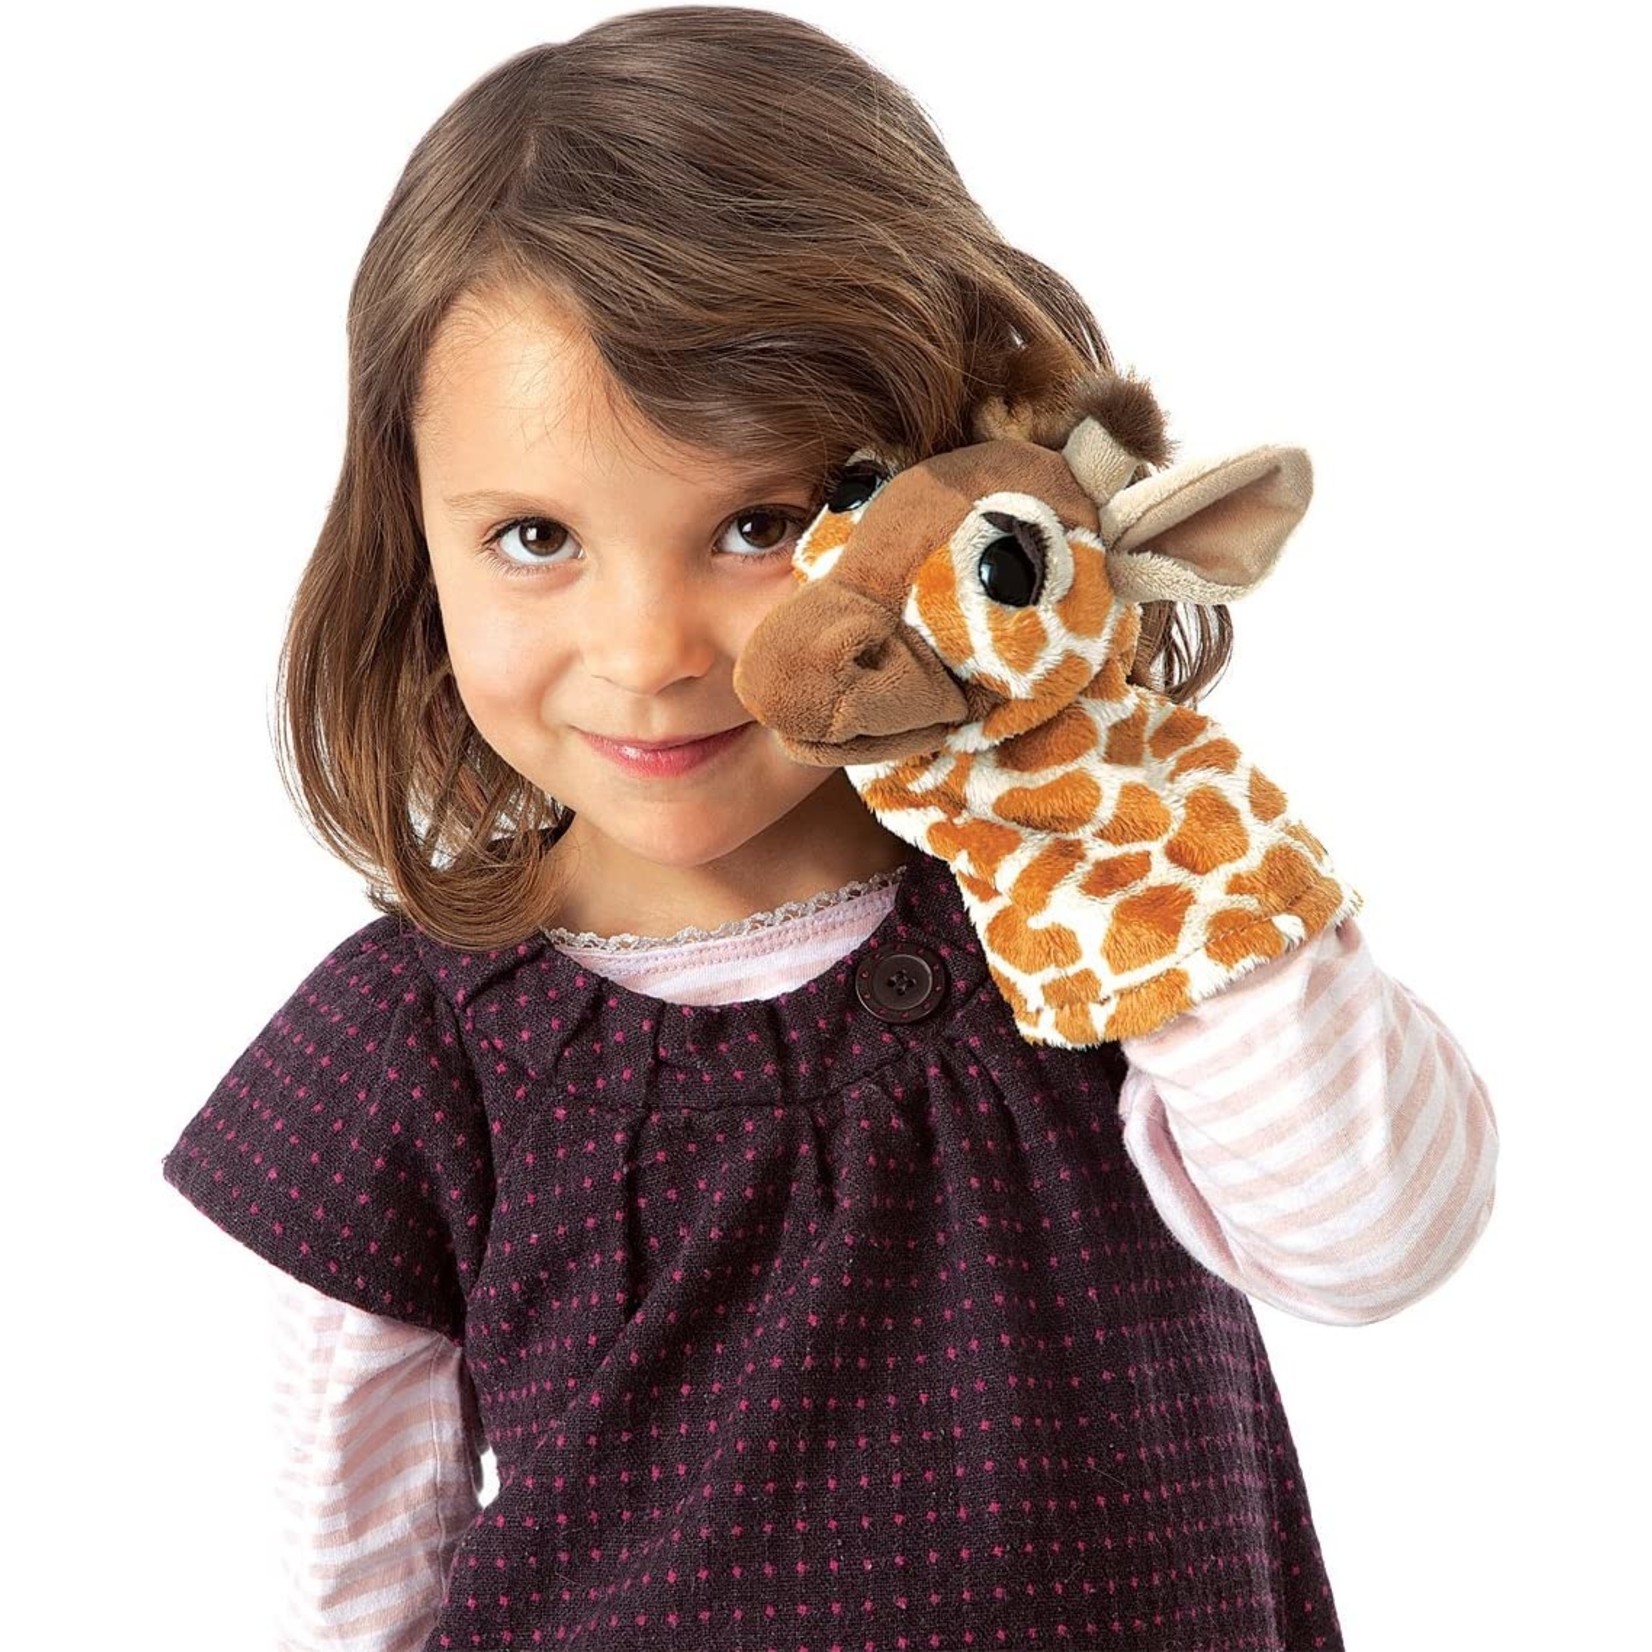 Puppet - Giraffe